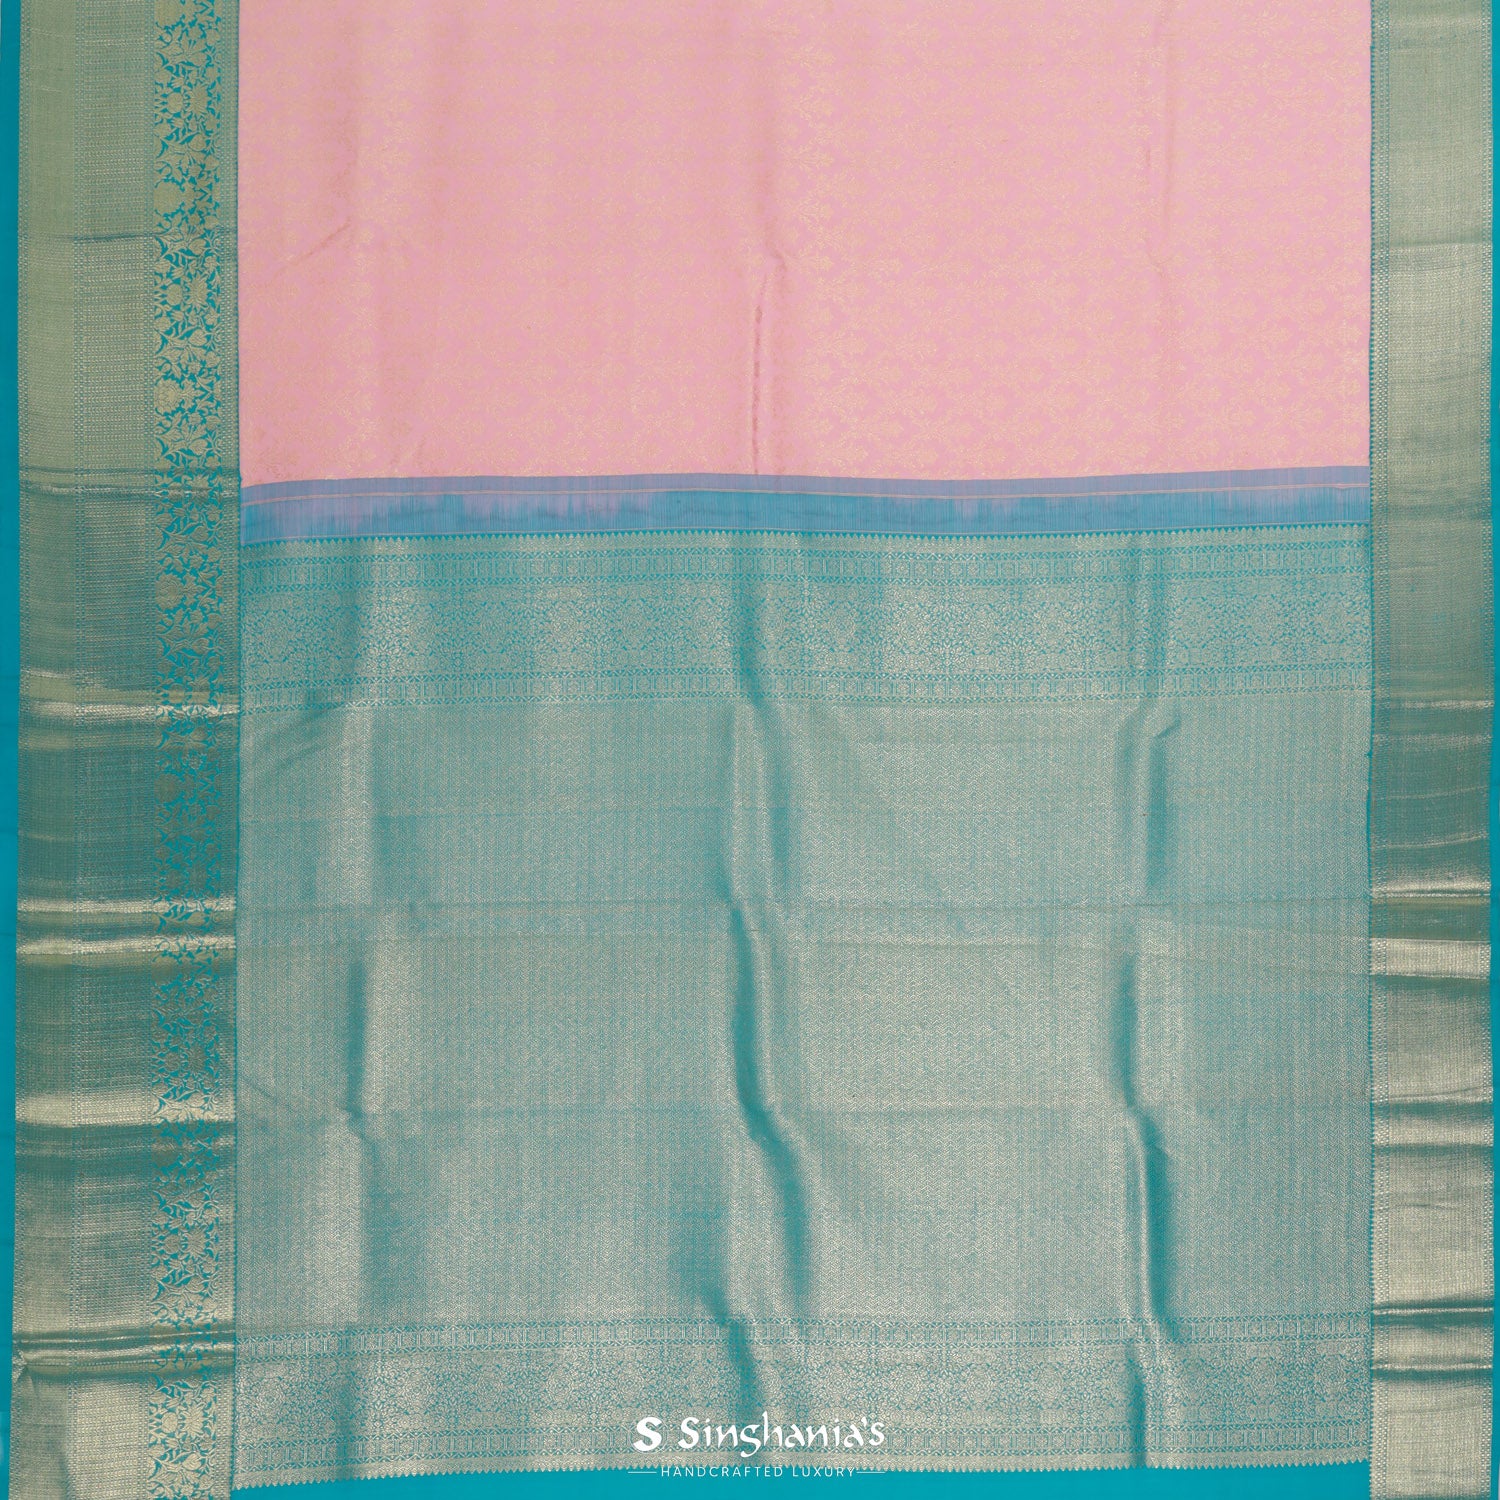 Baby Pink Kanjivaram Silk Saree With Floral Jaal Pattern